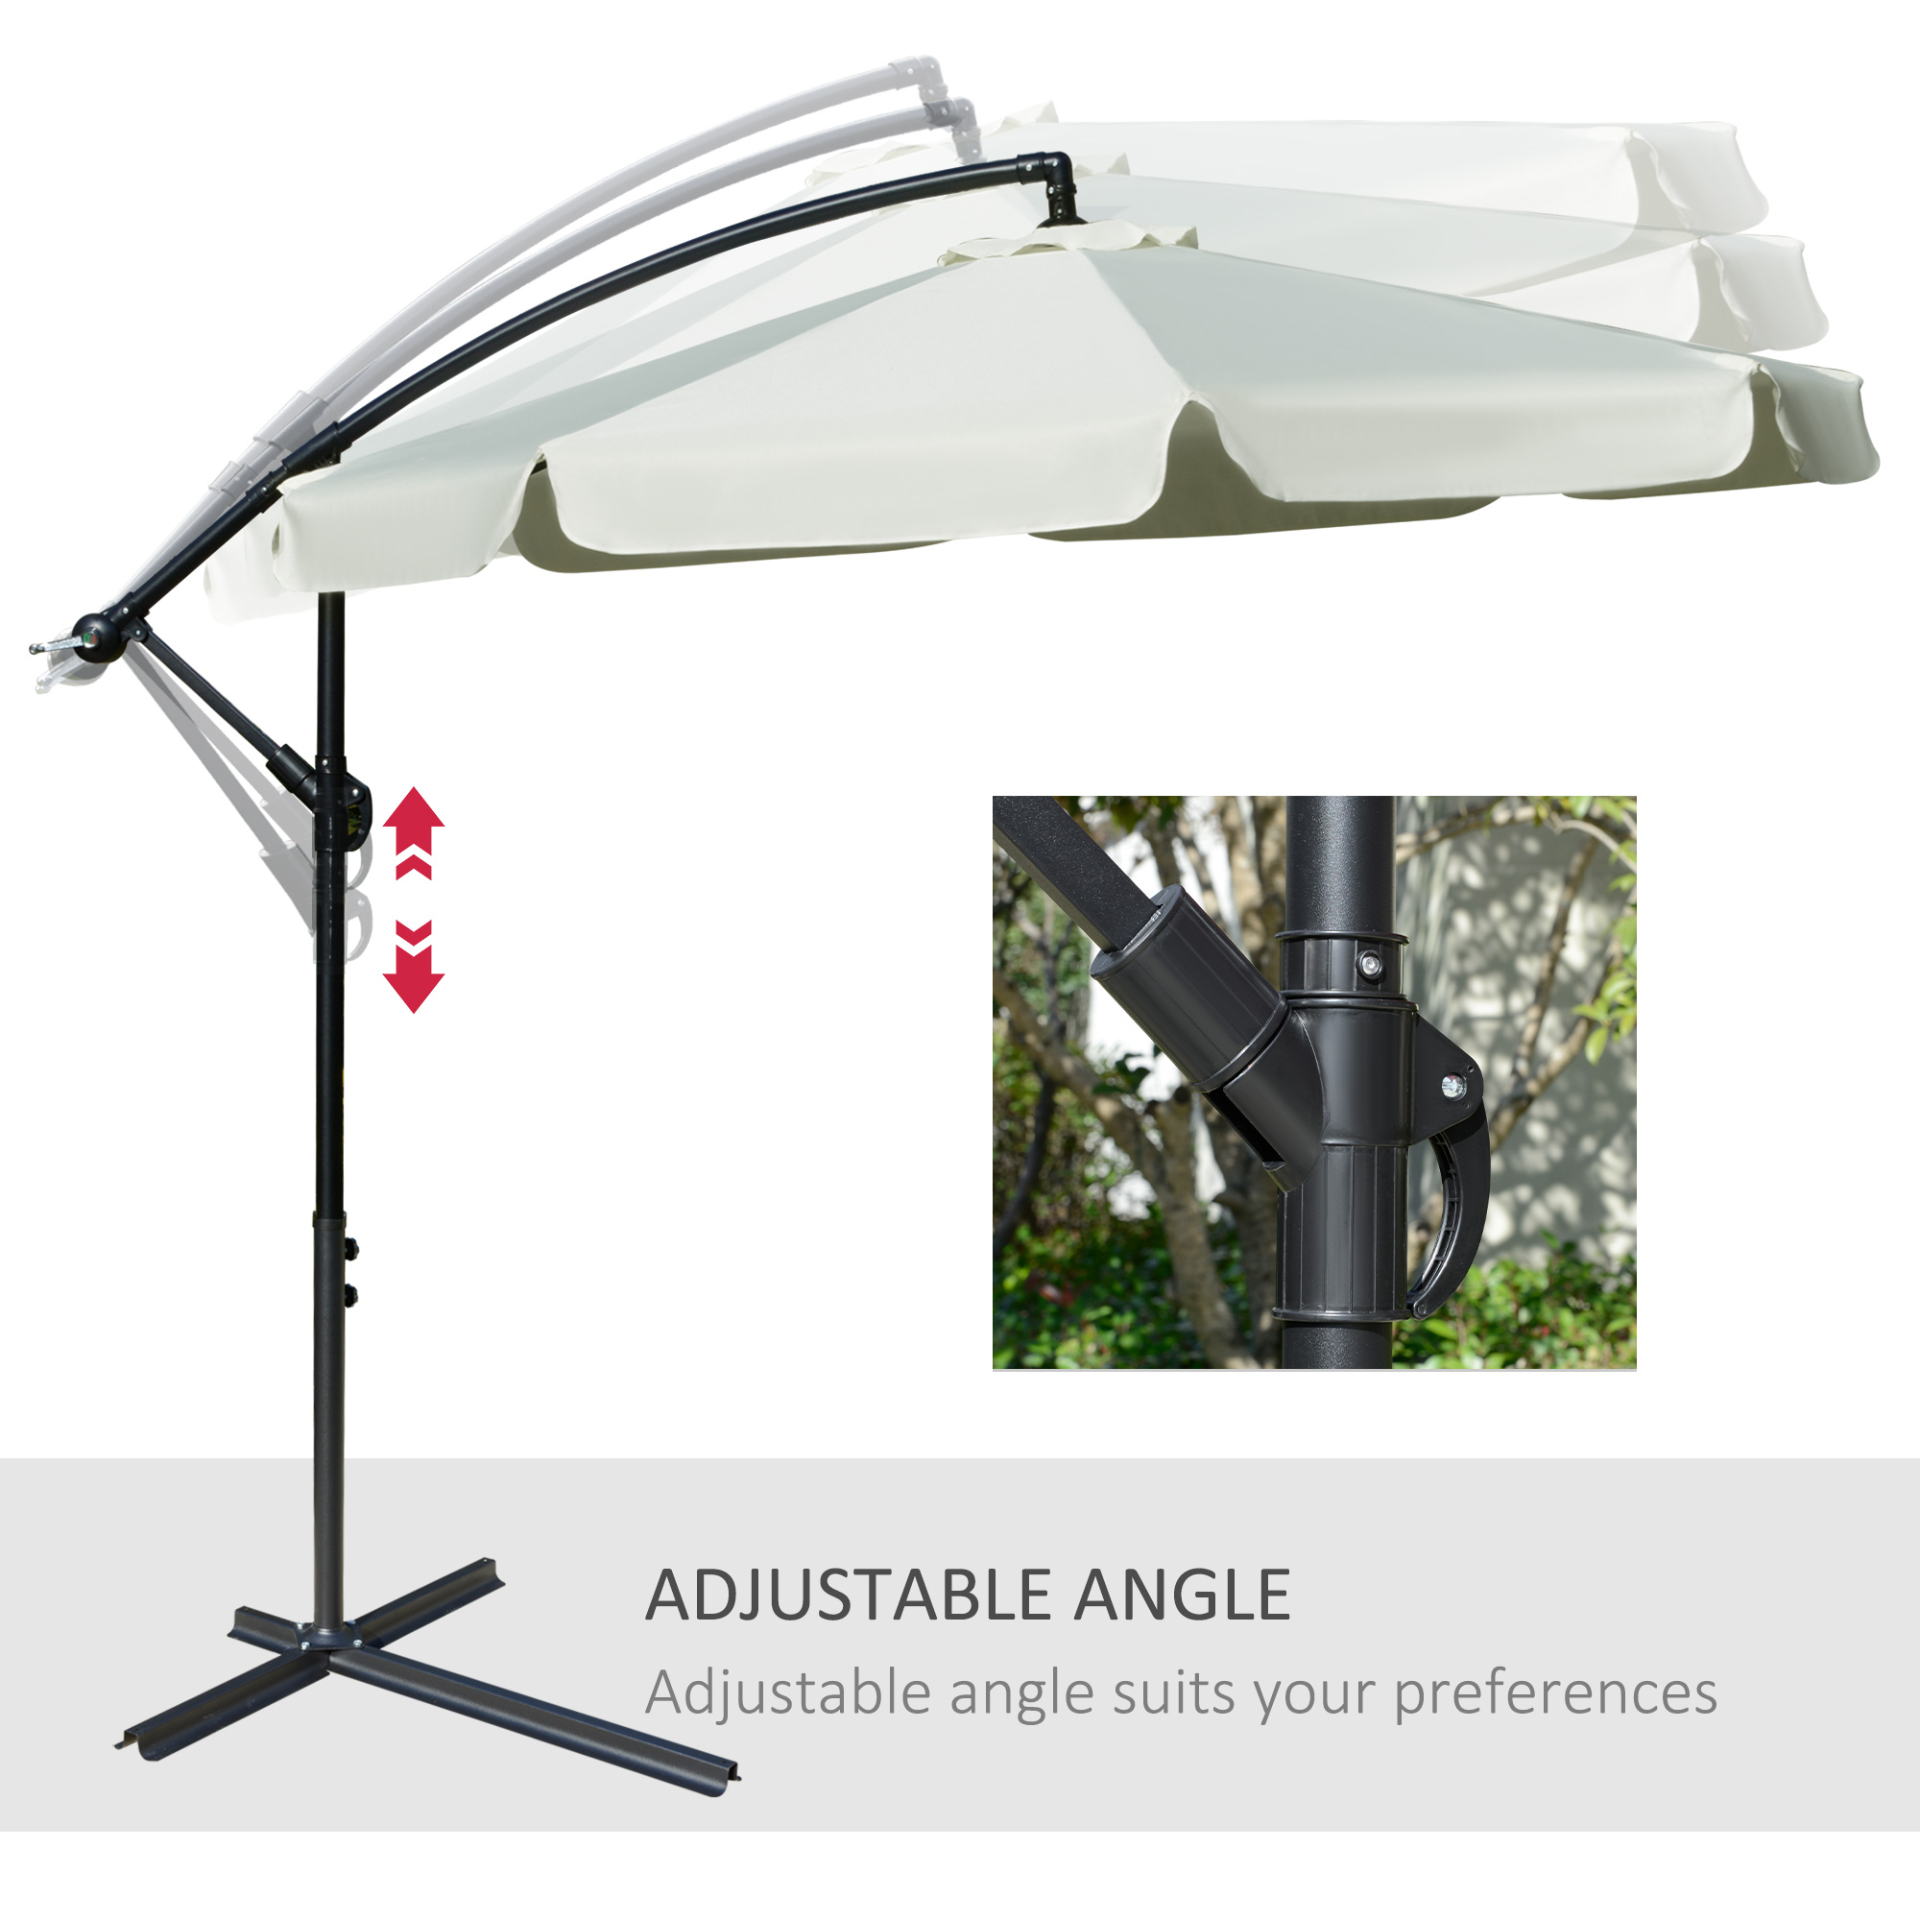 Outsunny 2.7m Garden Banana Parasol Cantilever Umbrella with Crank Handle and Cross Base for Outdoor, Hanging Sun Shade, Cream White